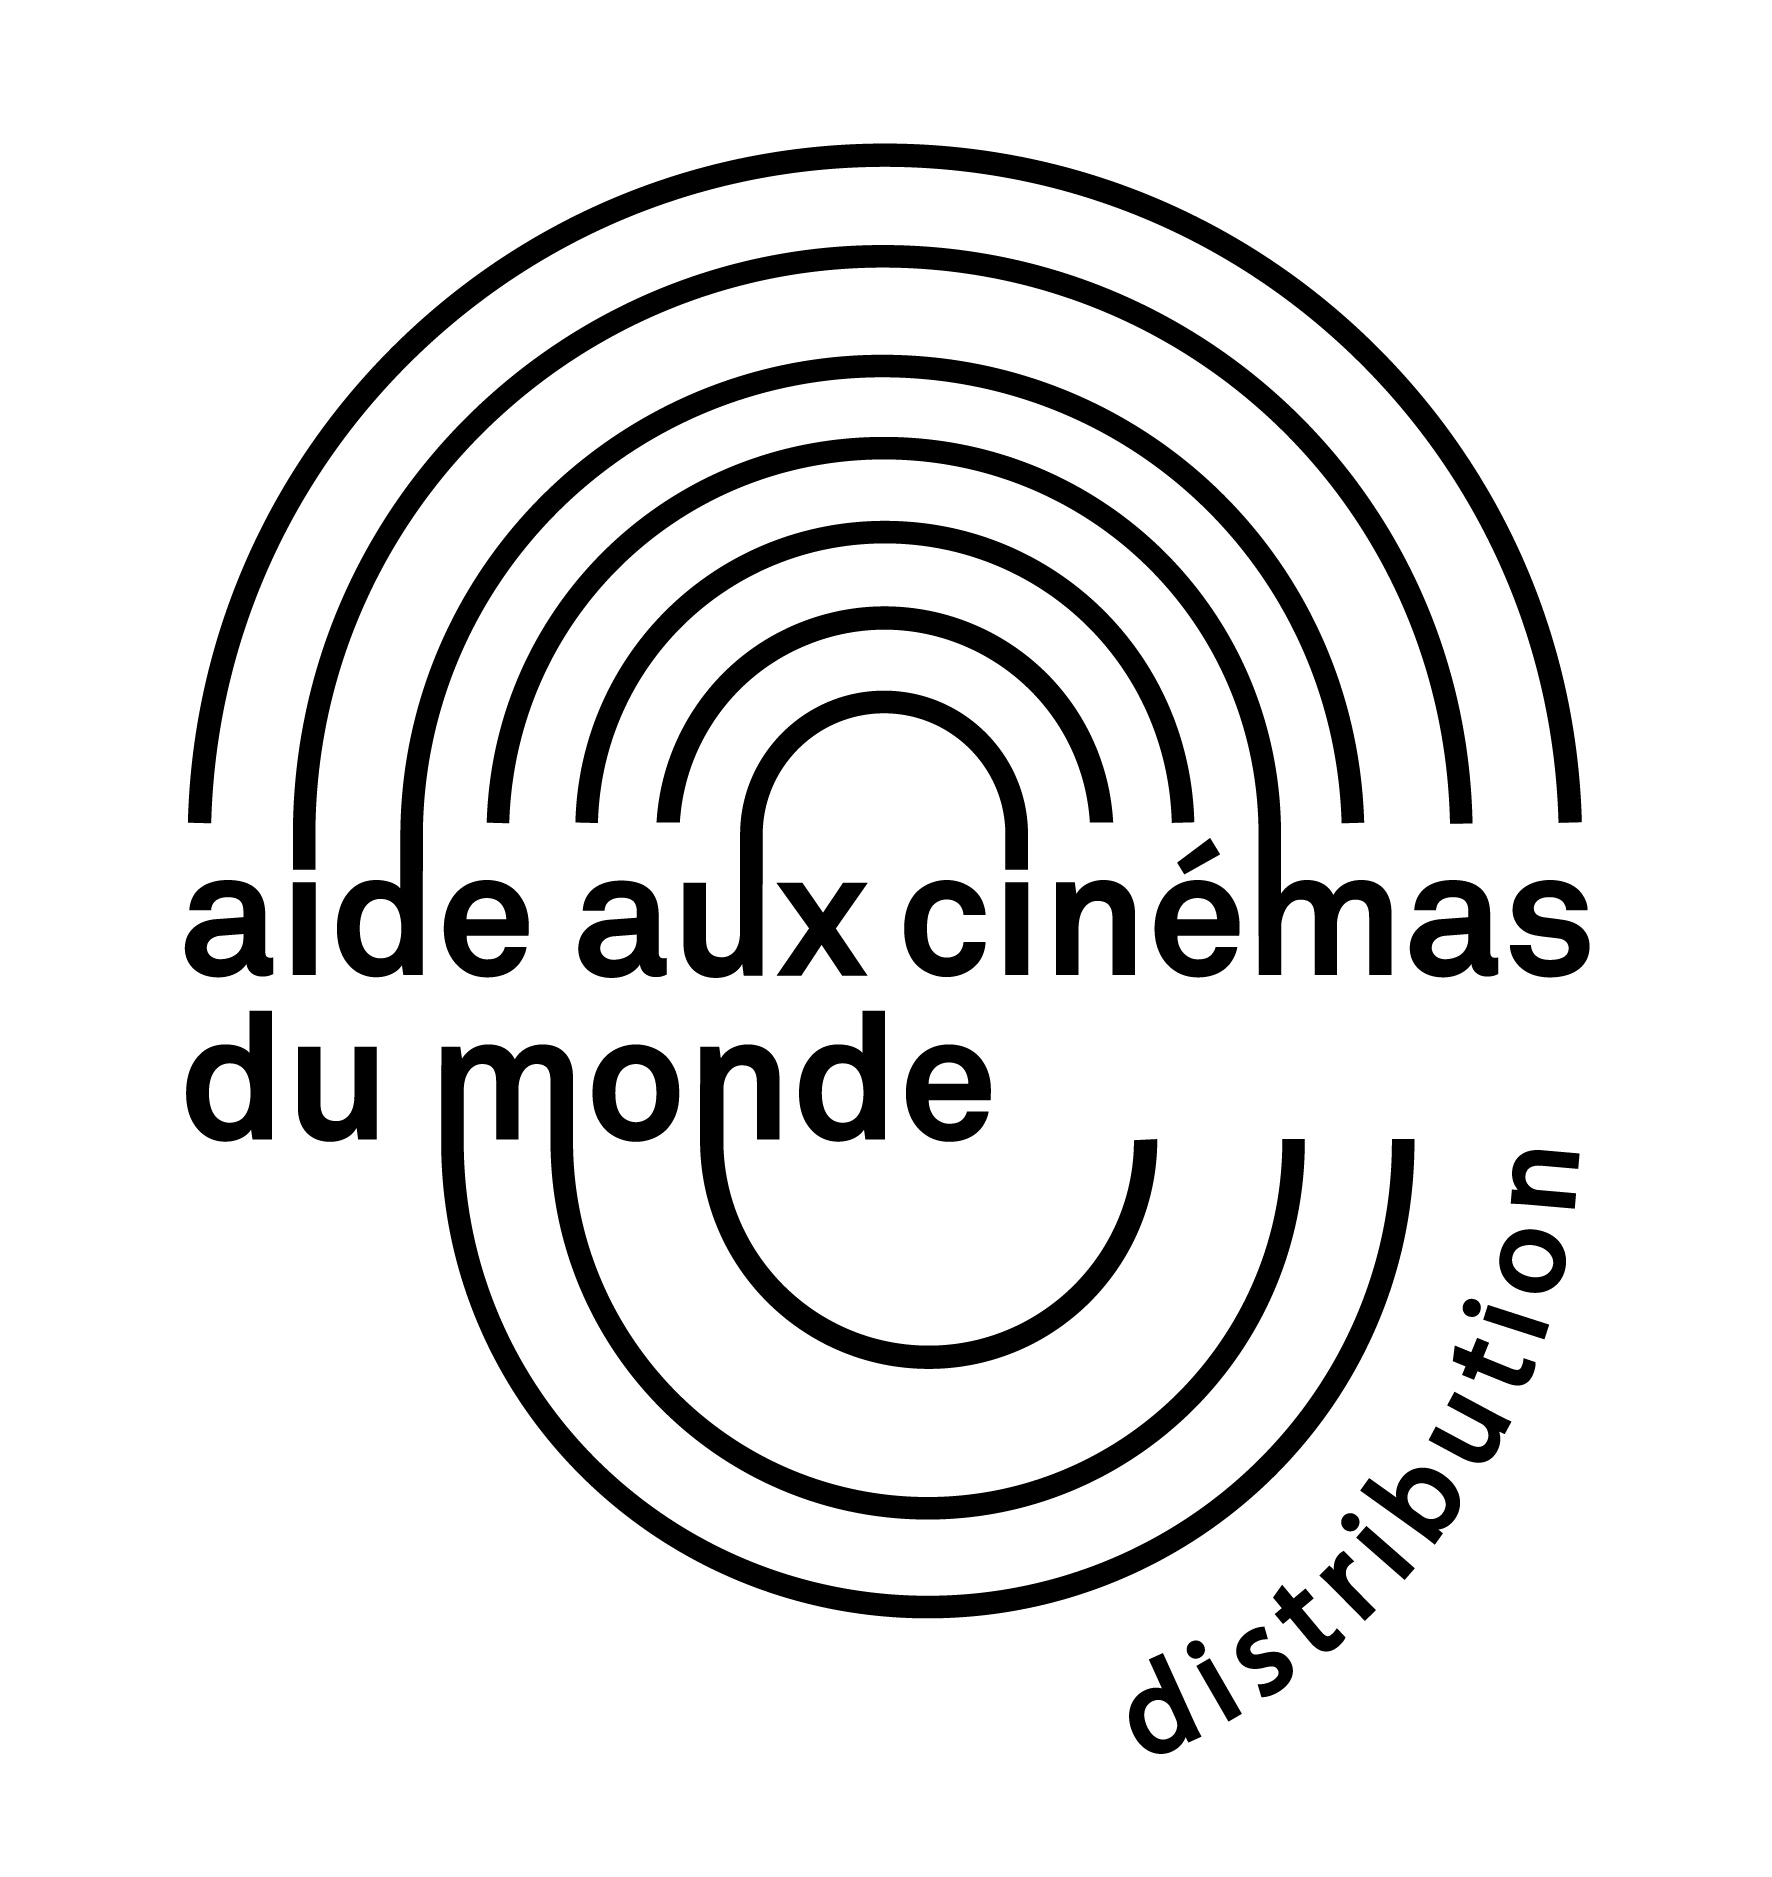 CNC_Logo_Aide_aux_cinemas_Distribution_noir-01.jpg